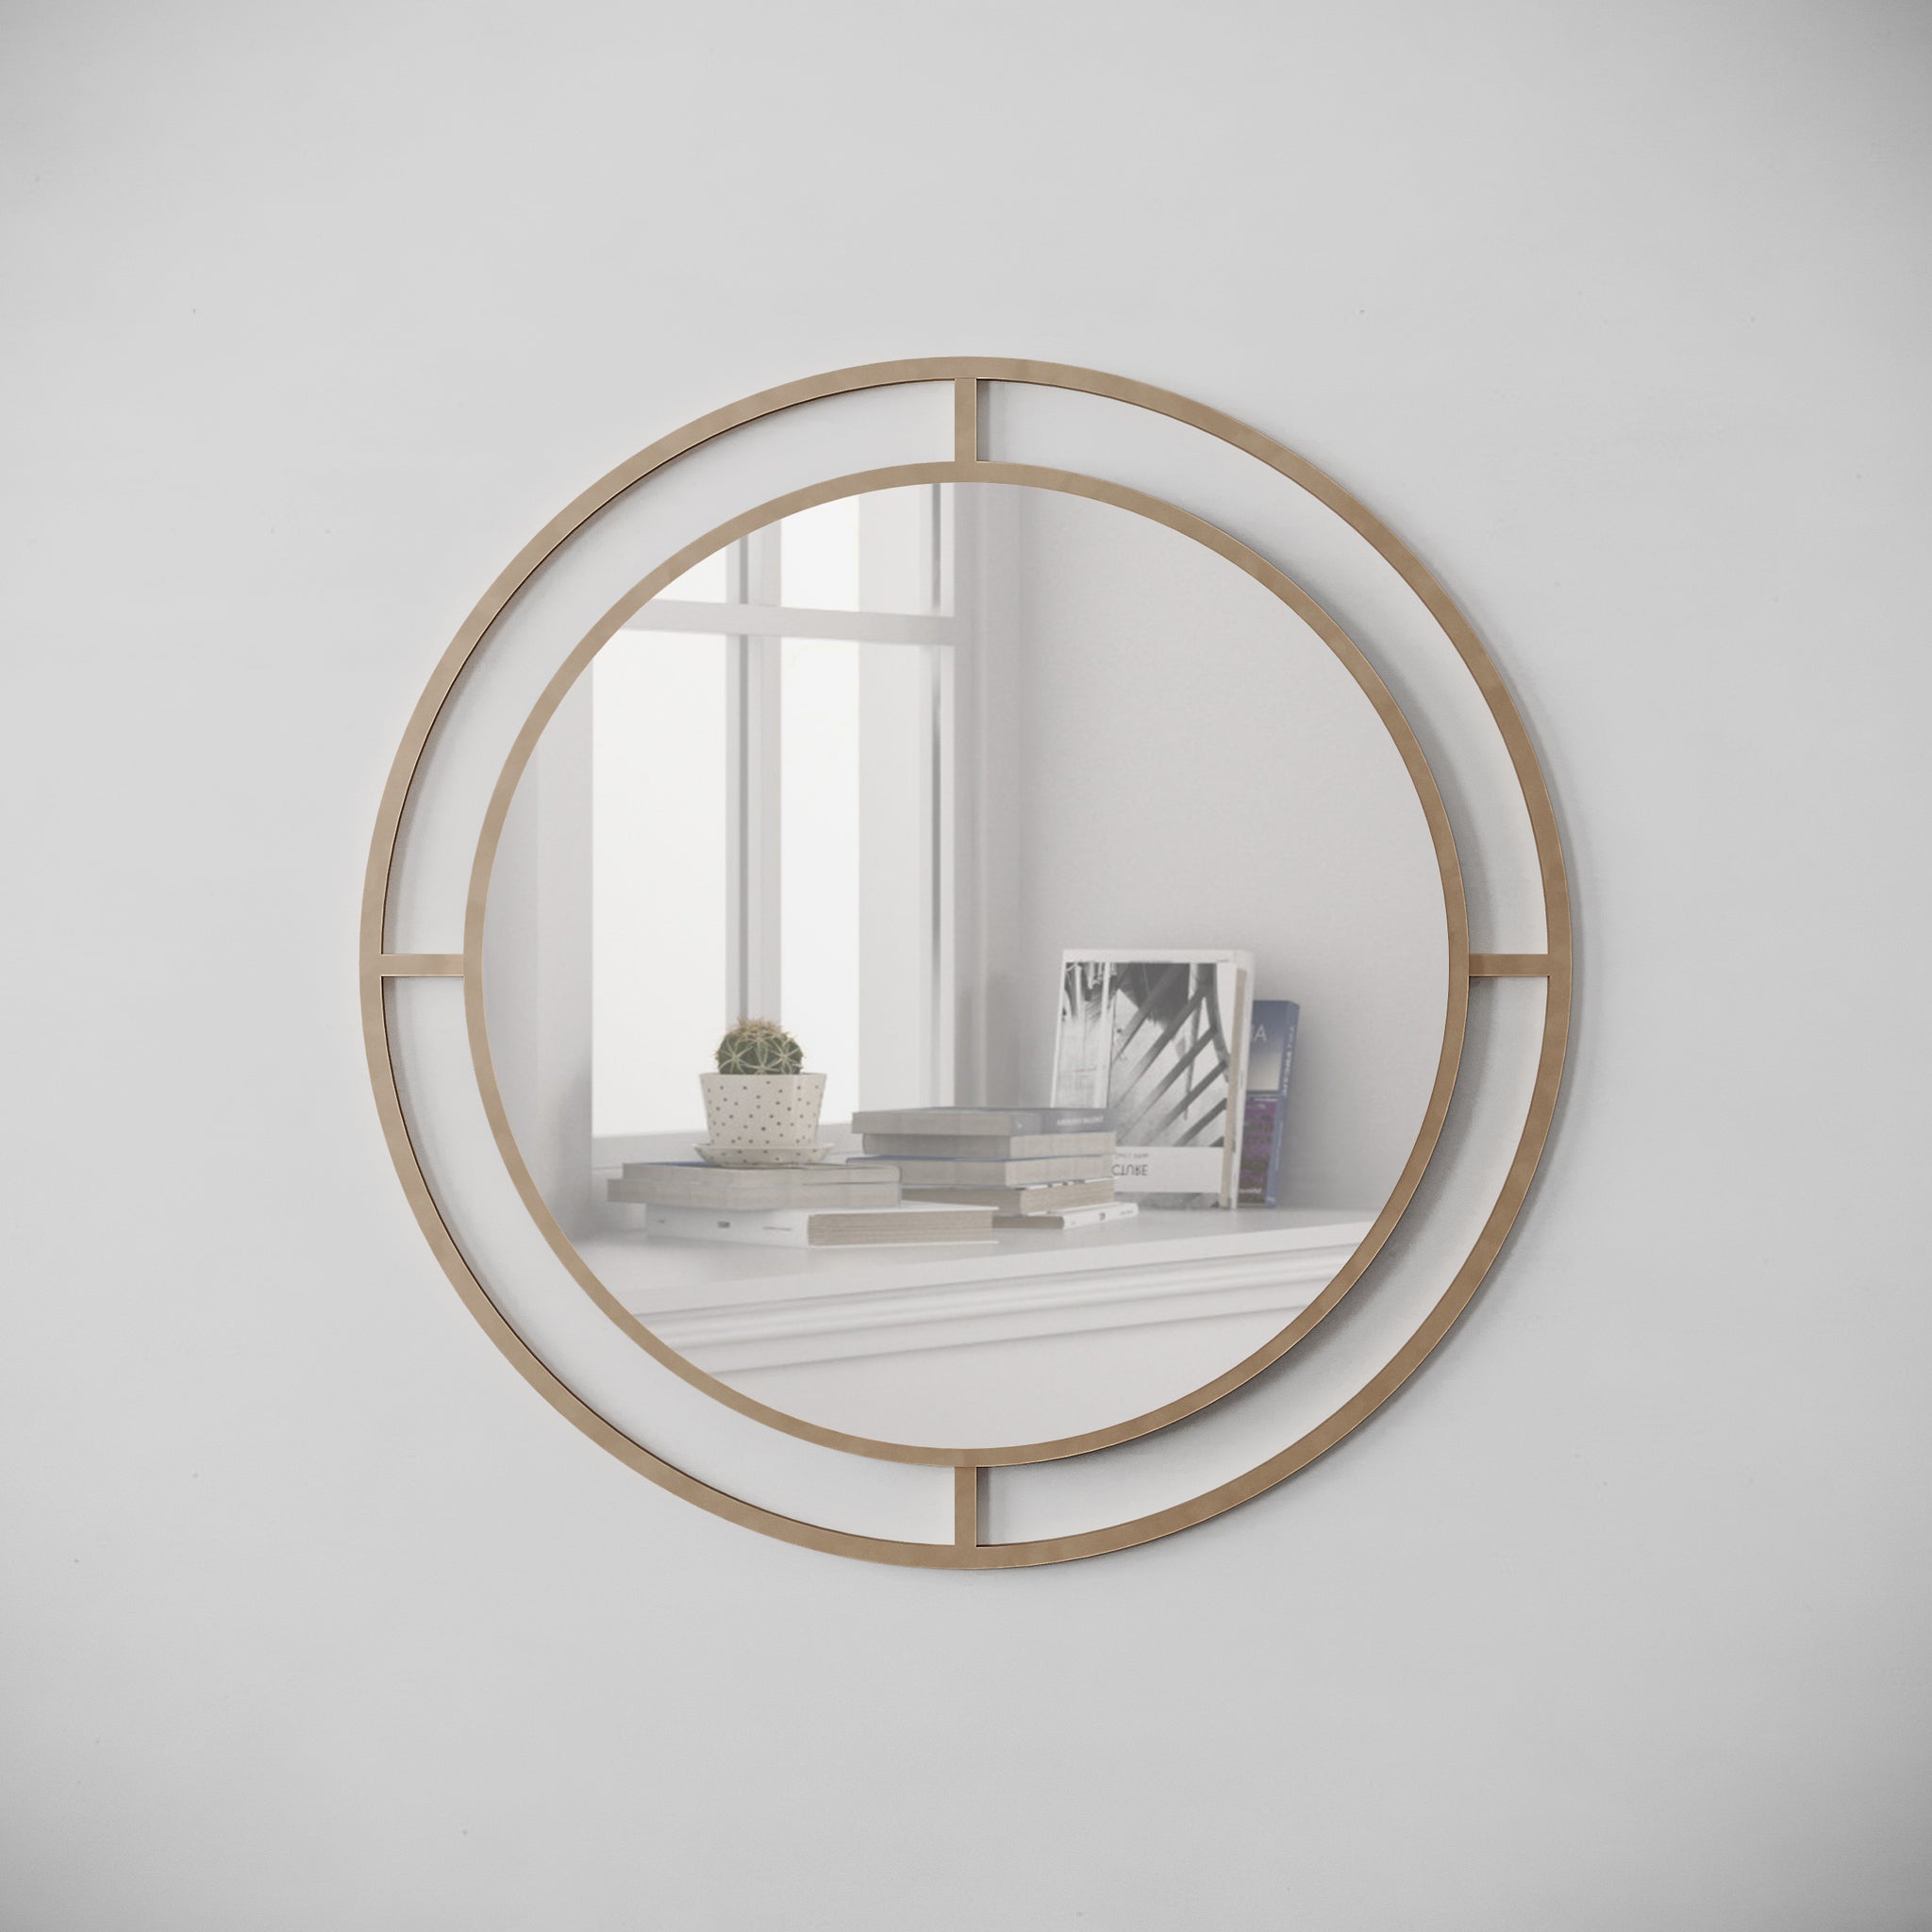 Round mirror, gold frame, 55cm diameter